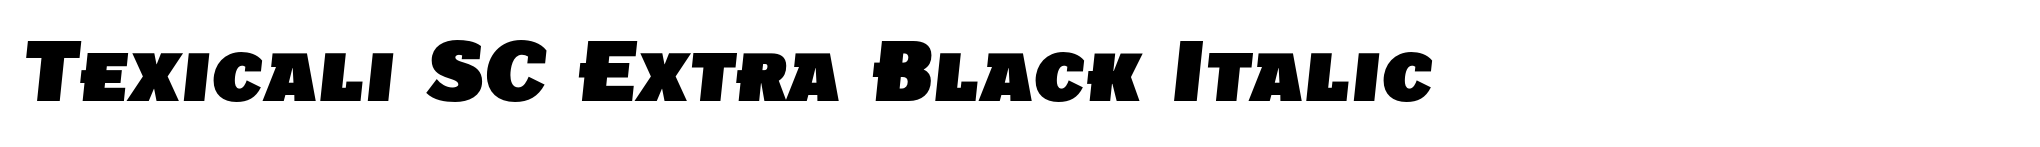 Texicali SC Extra Black Italic image